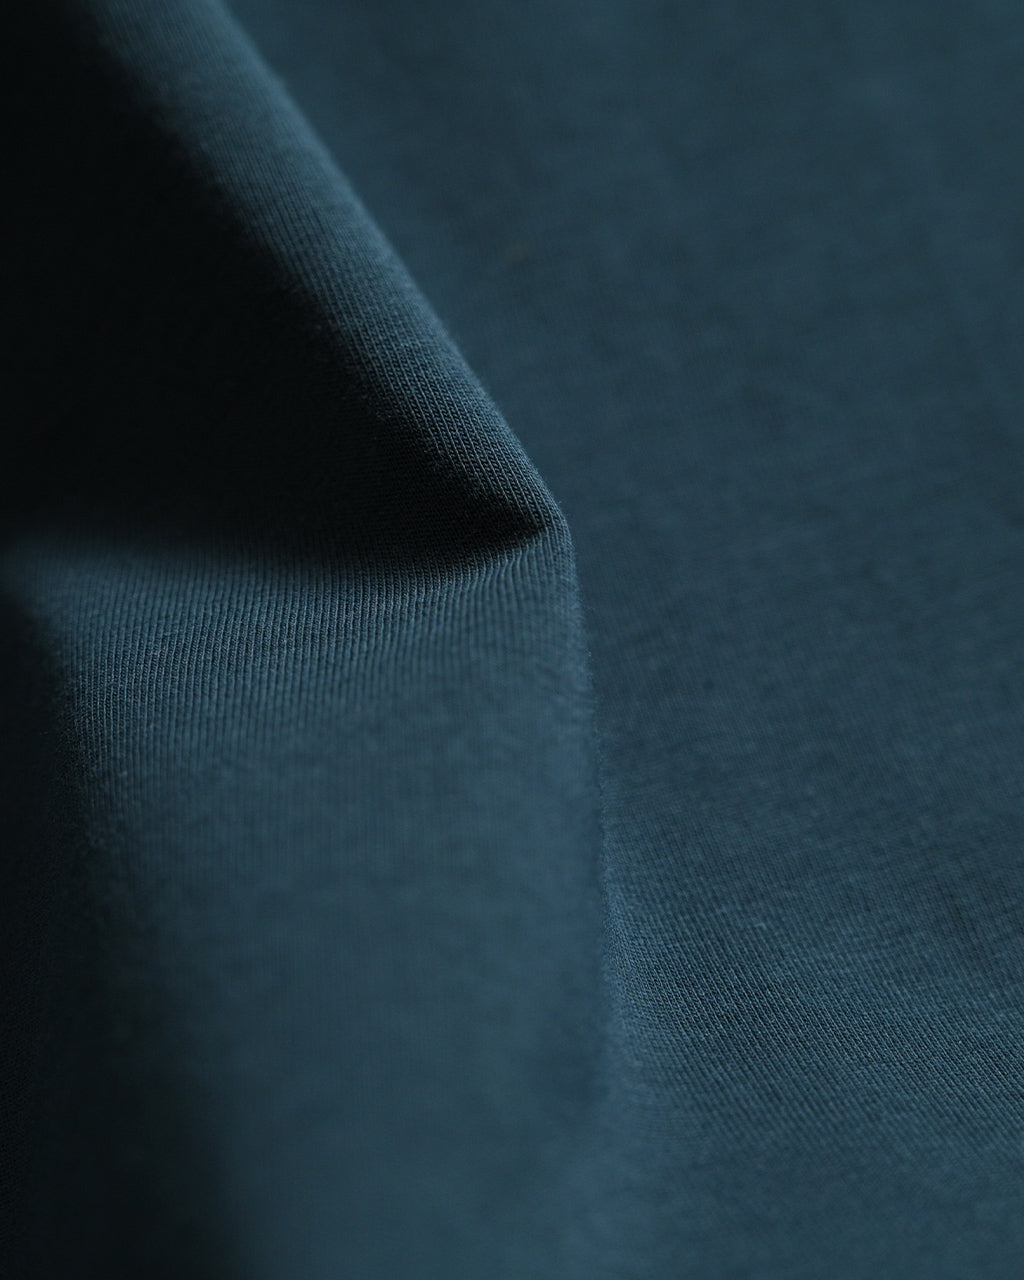 RAINMAKER レインメーカー クルーネック Tシャツ CREW-NECK T-SHIRT カットソー メンズ  RM241-036【送料無料】